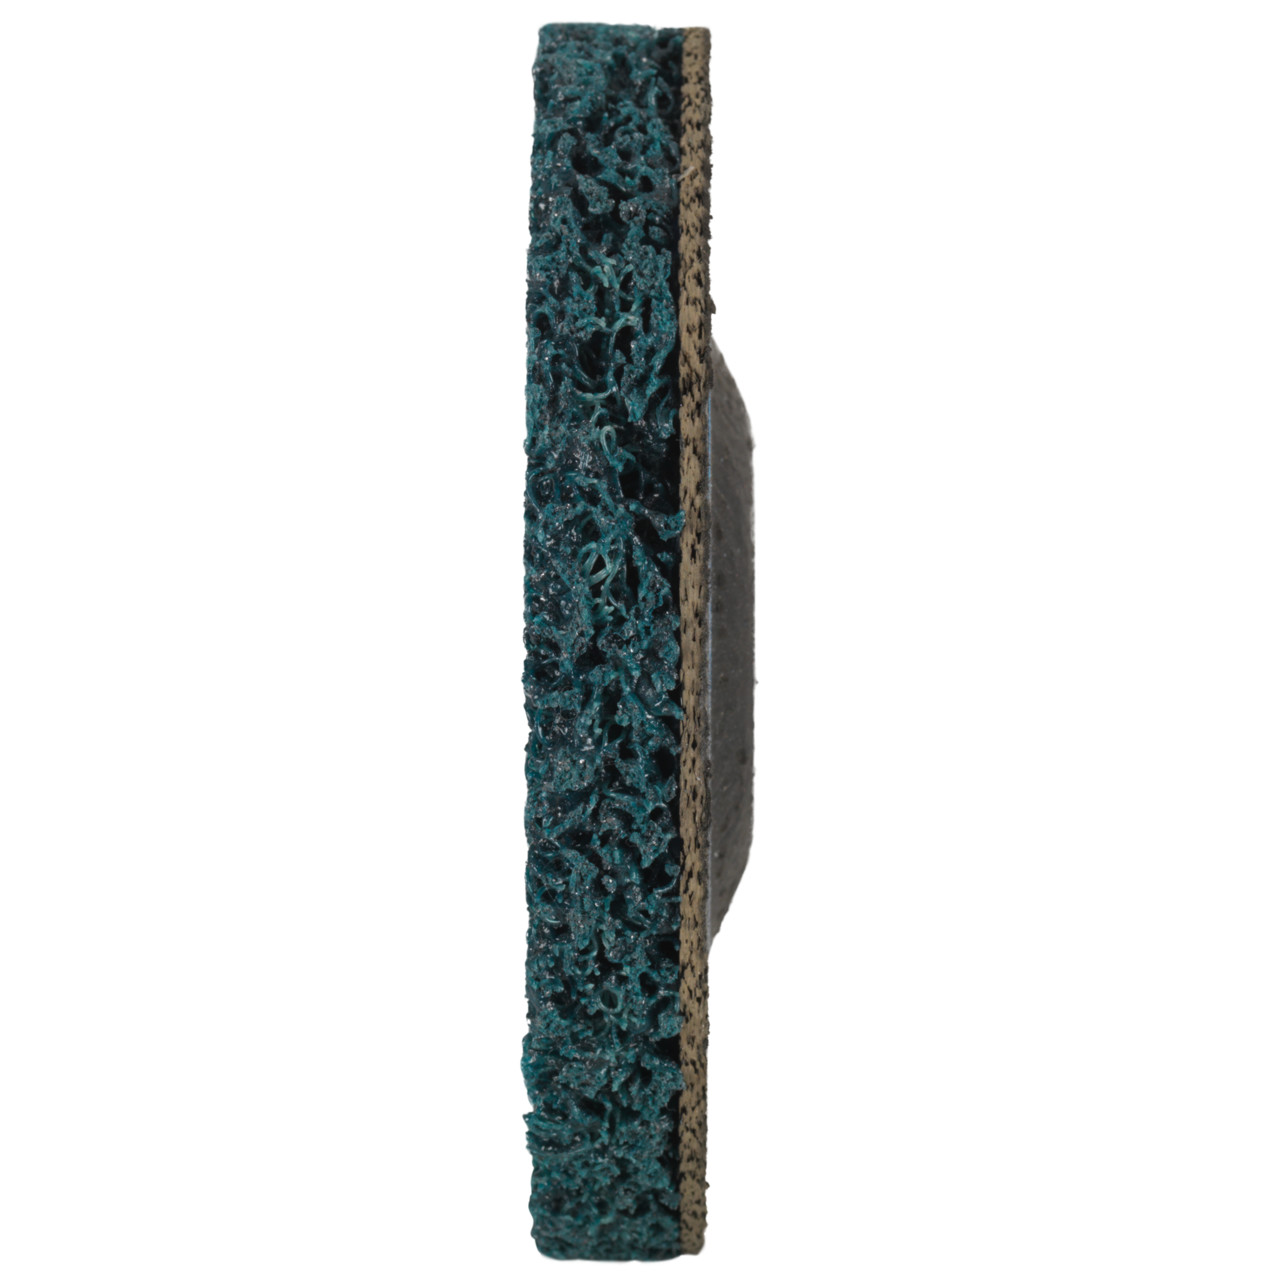 Tyrolit Grove reinigingsschijf DxH 115x22,2 Universeel toepasbaar, A EX. GROB, vorm: 28, Art. 34547535 (voorheen 34206236)